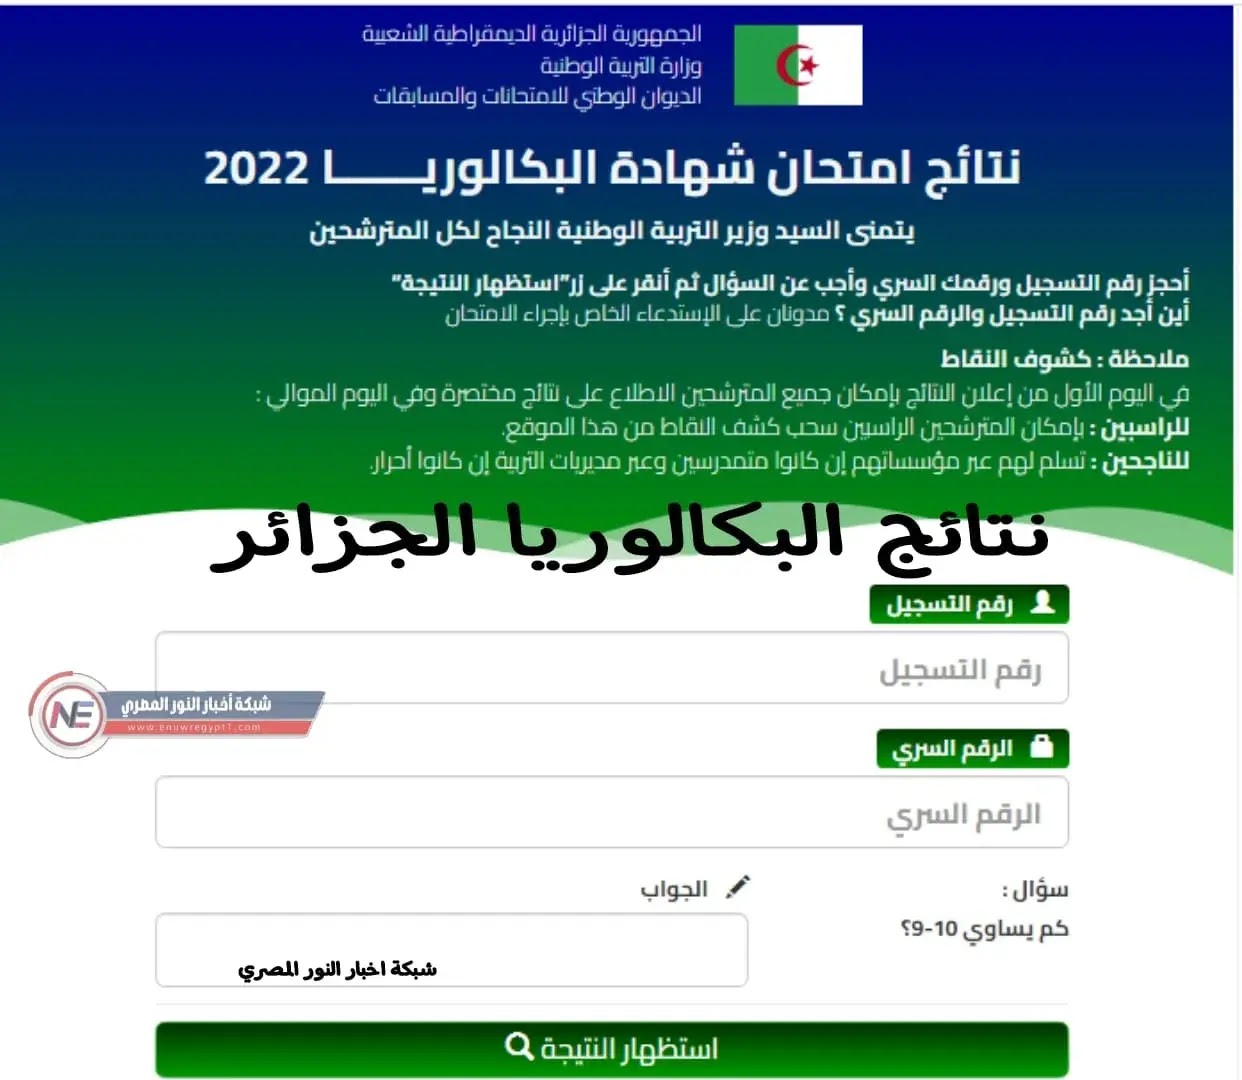 رابط bac.oned.dz استخراج نتائج البكالوريا 2022 في الجزائر "نتائج الباك" عبر موقع الديوان الوطني للامتحانات والمسابقات